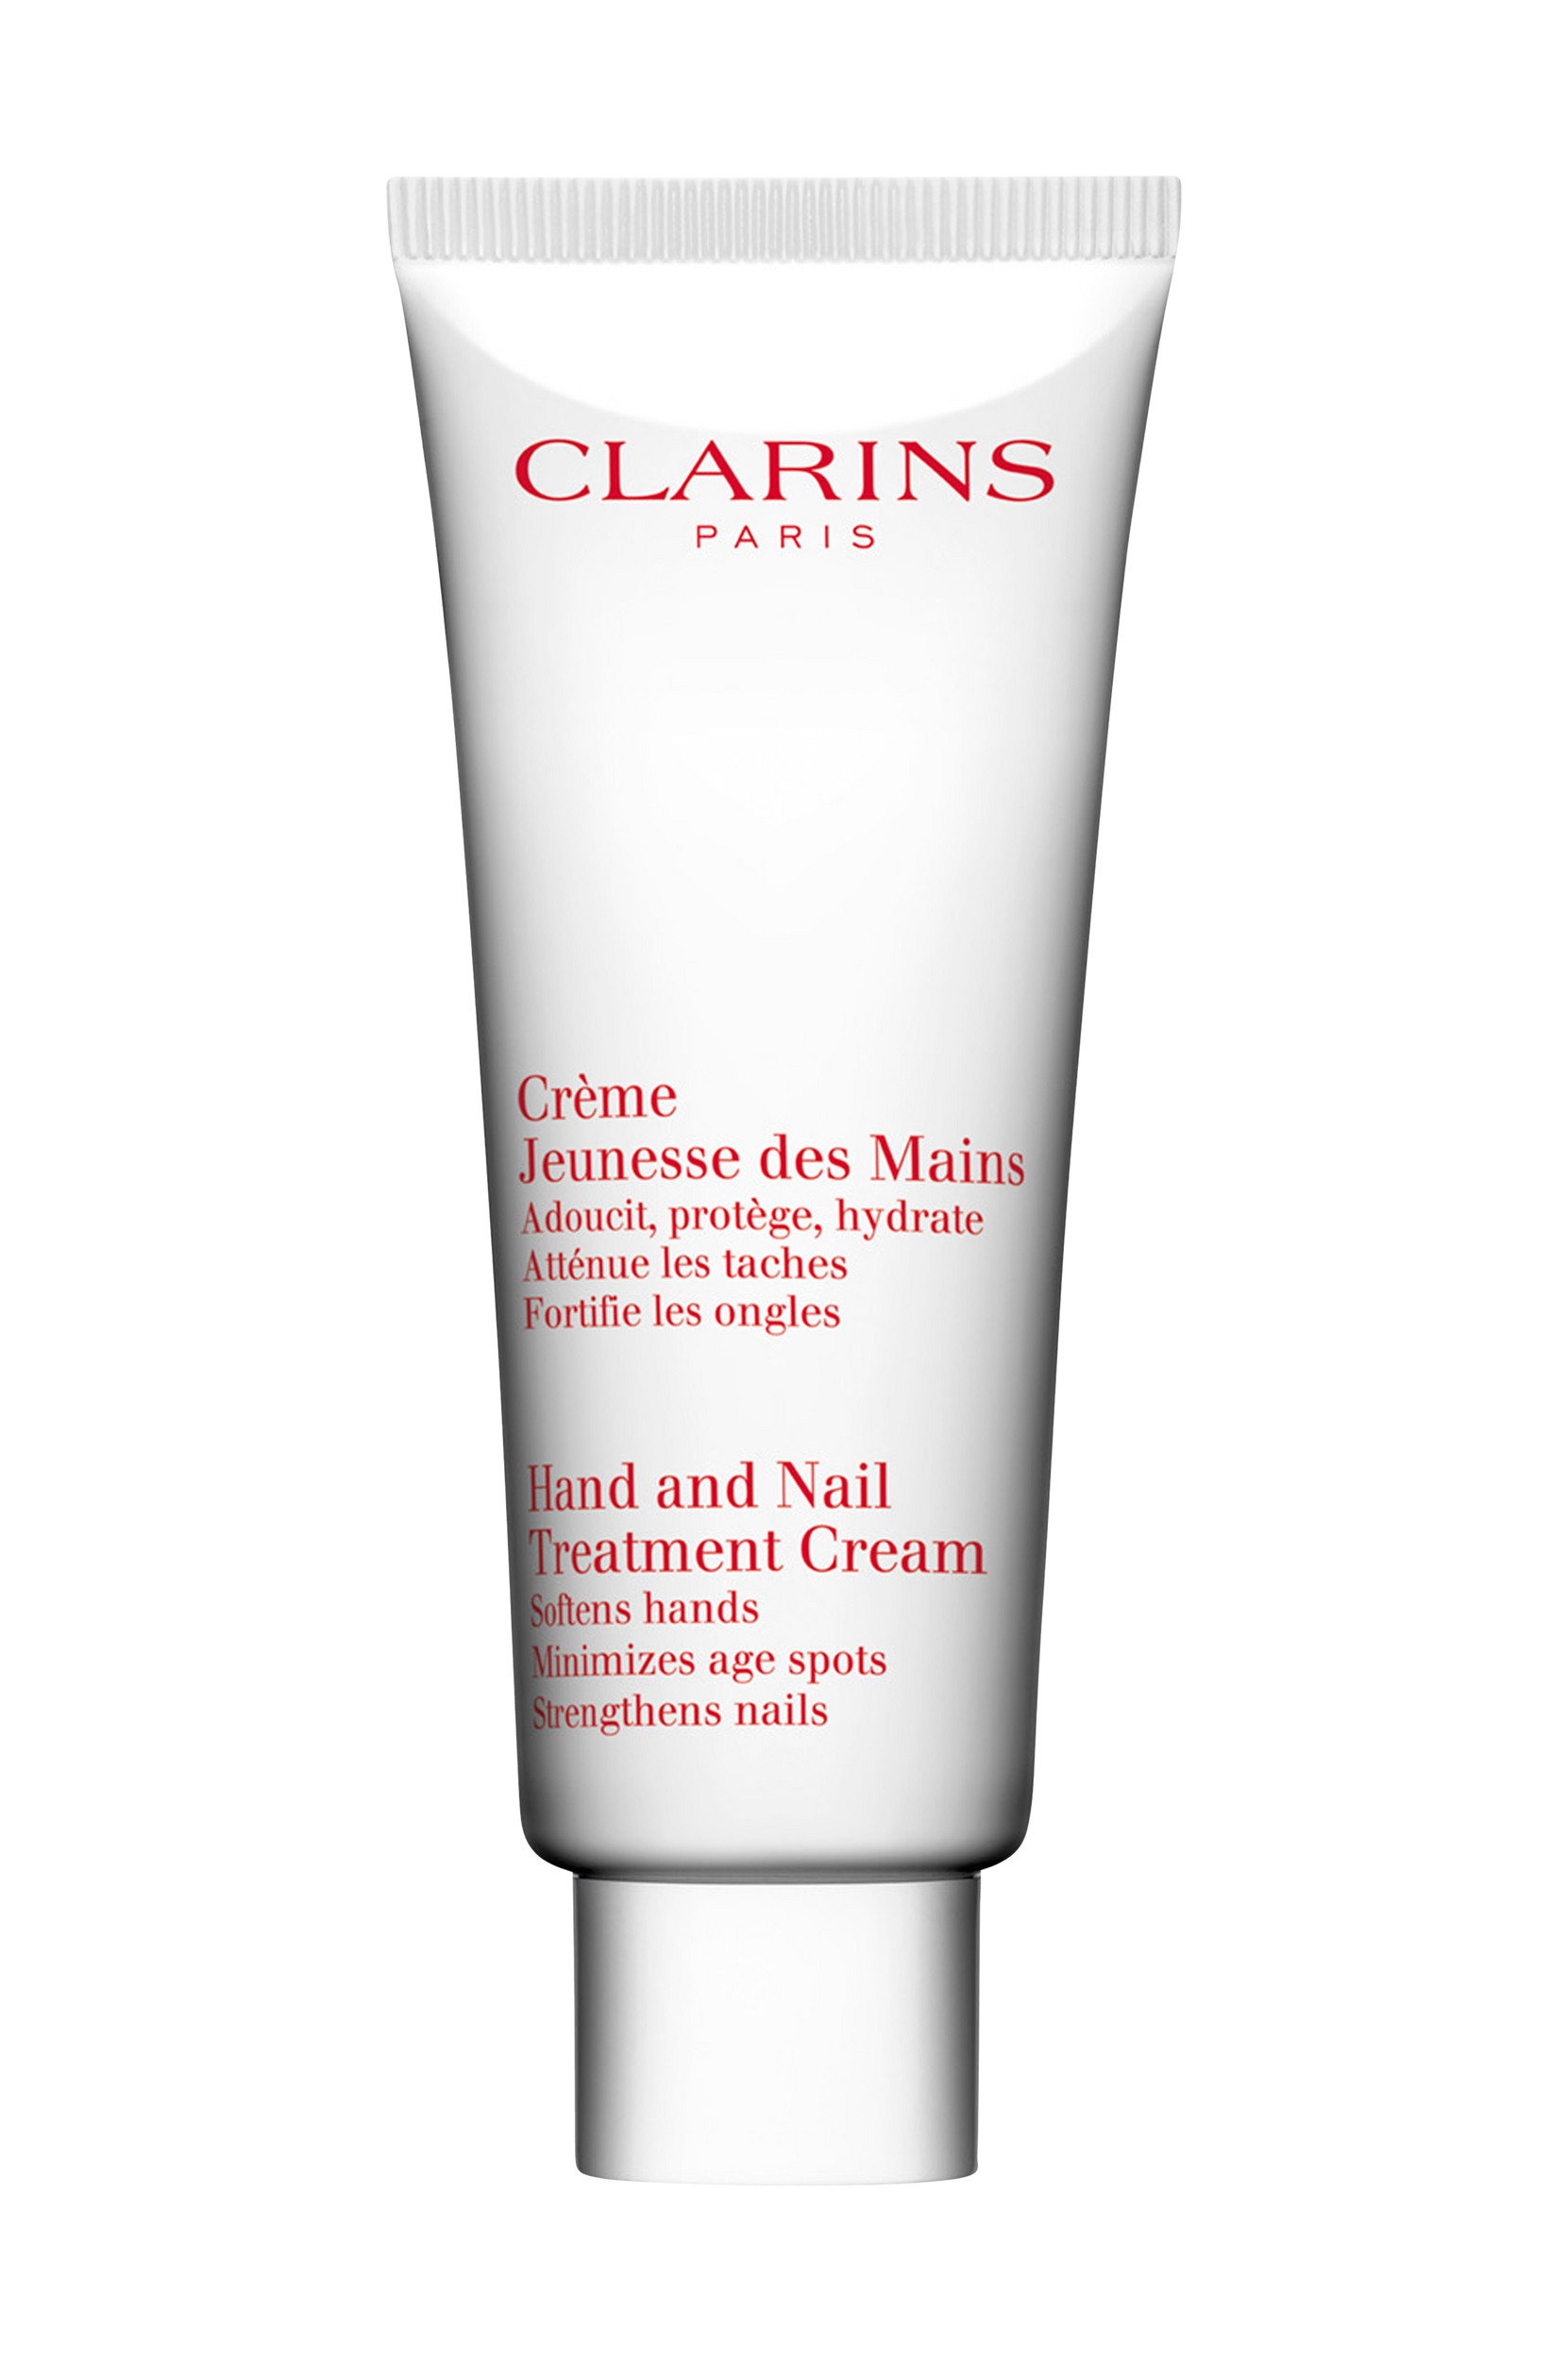 Hand & Nail Treatment Cream 100 ml, Clarins